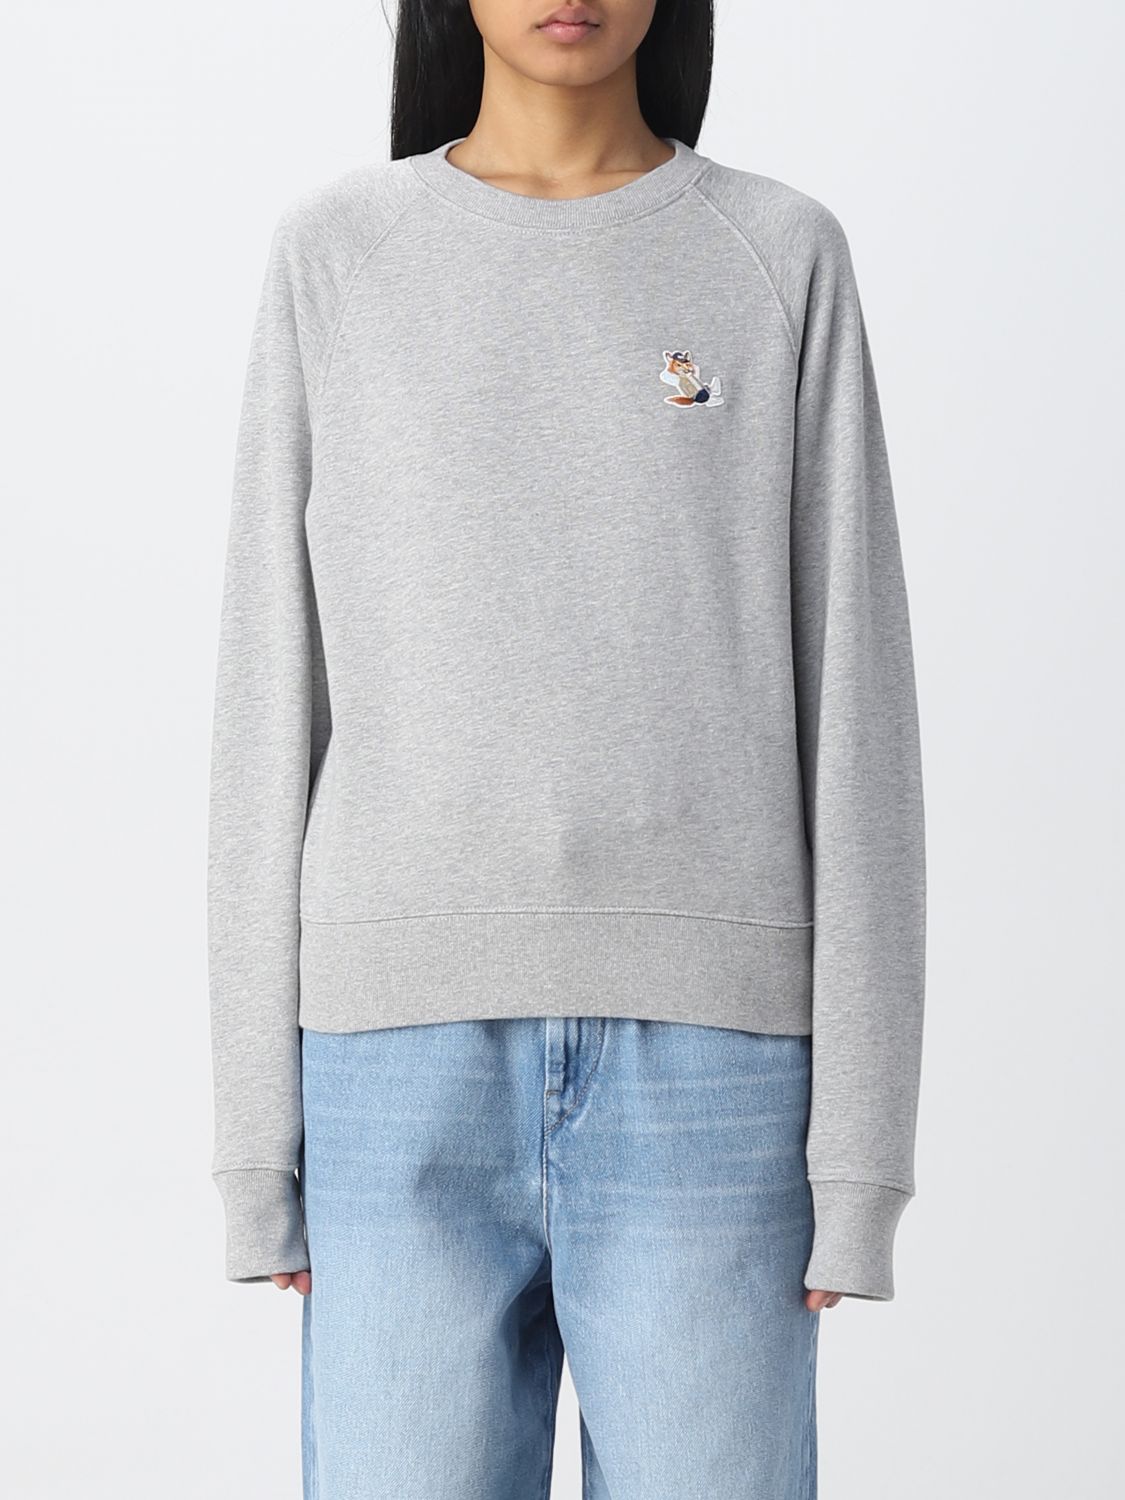 Maison Kitsuné Sweatshirt Woman In Grey | ModeSens